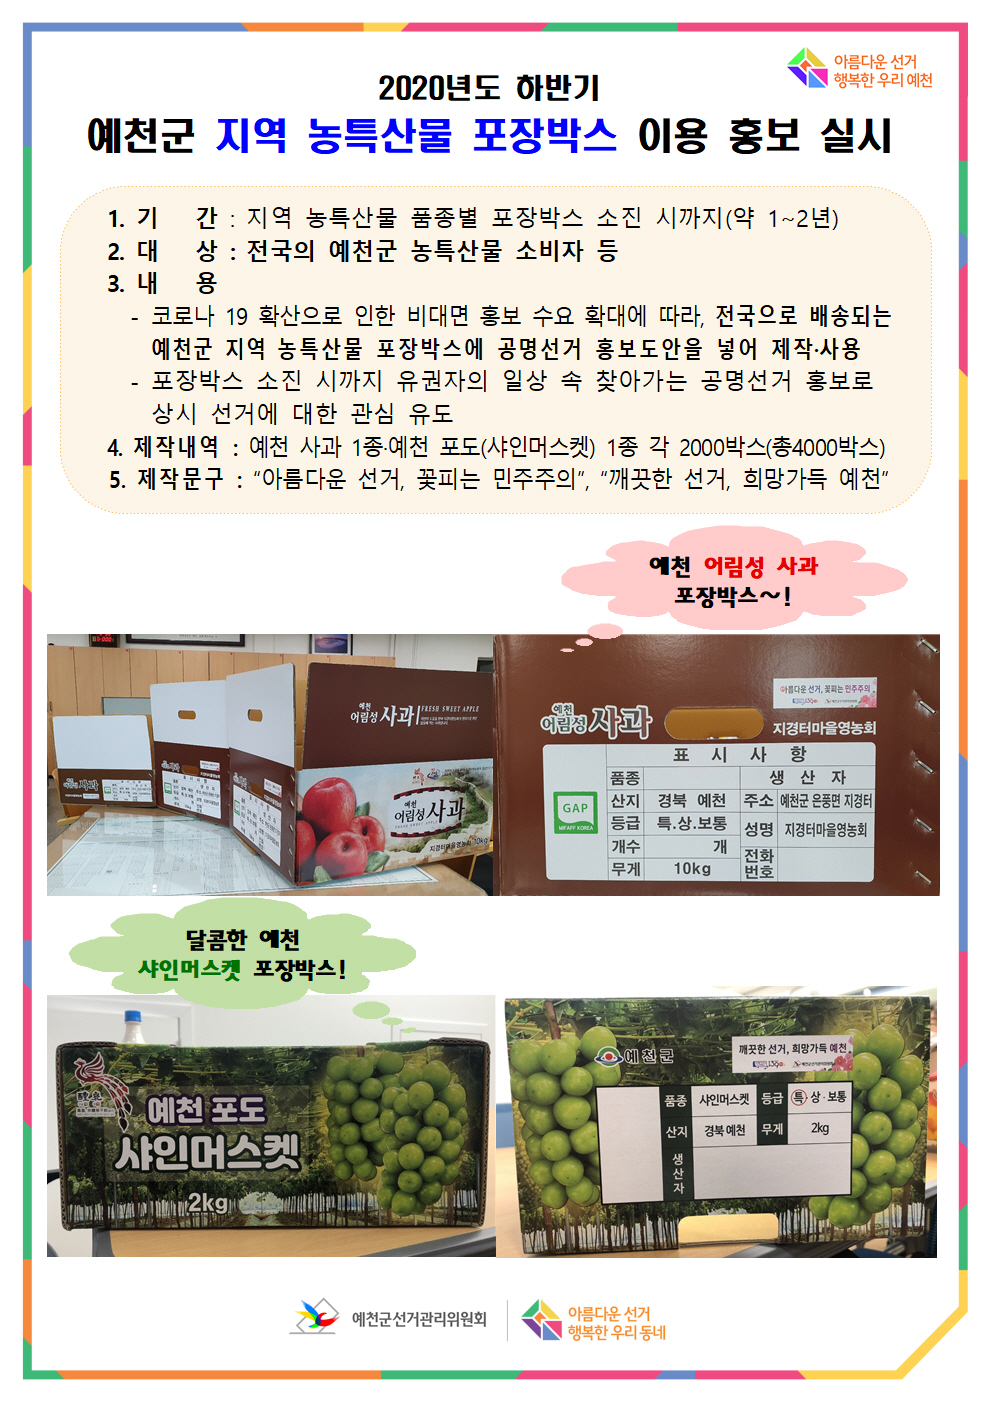 예천군 지역 공명선거 홍보 농특산물 포장박스 안내 포스터. 자세한 안내사항은 위의 내용을 참고하시기 바랍니다. 